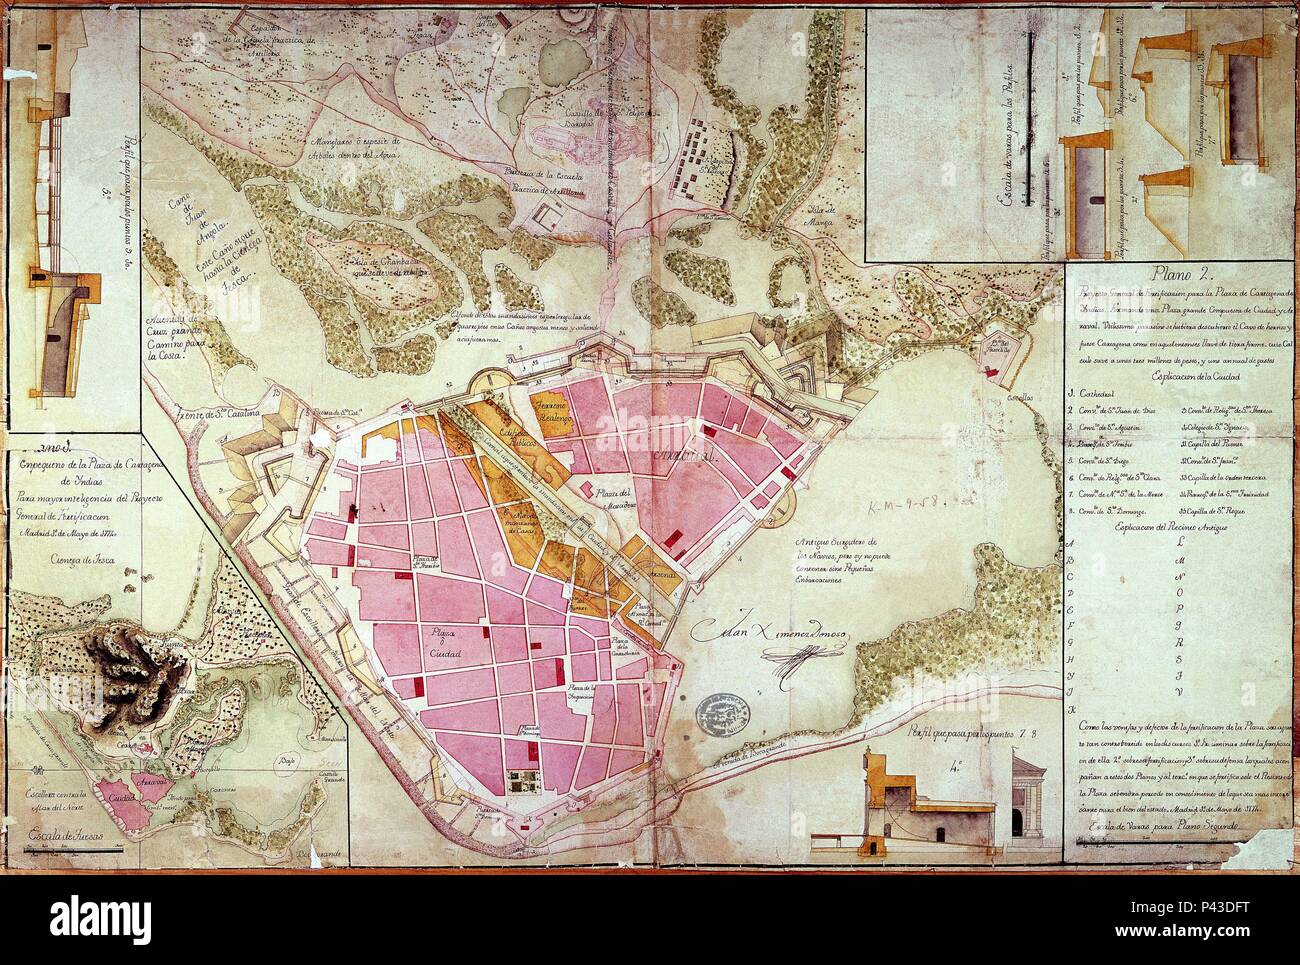 PLANO DE CARTEGENA DE INDIAS 1774. Location: ARCHIVO HISTORICO MILITAR, MADRID, SPAIN. Stock Photo